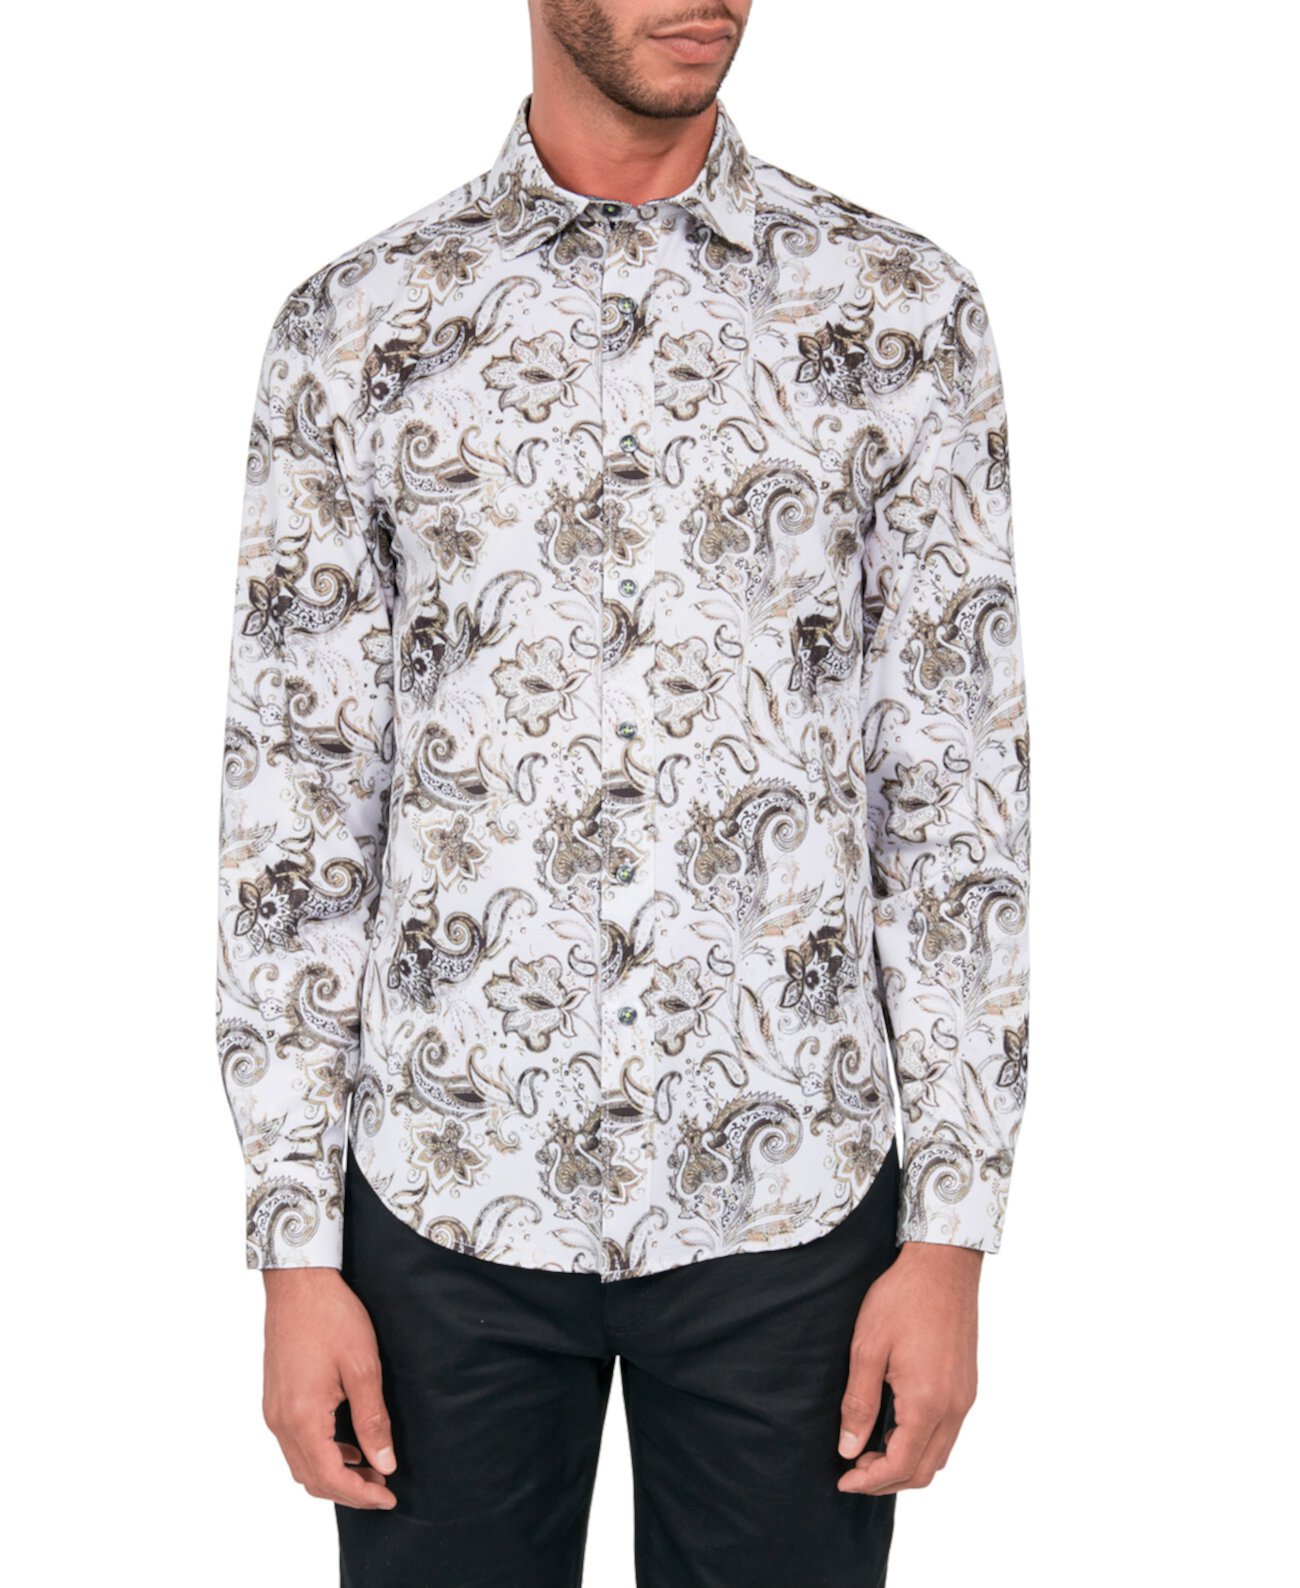 Мужская эластичная рубашка на пуговицах с узором пейсли стандартного кроя без утюга Society of Threads